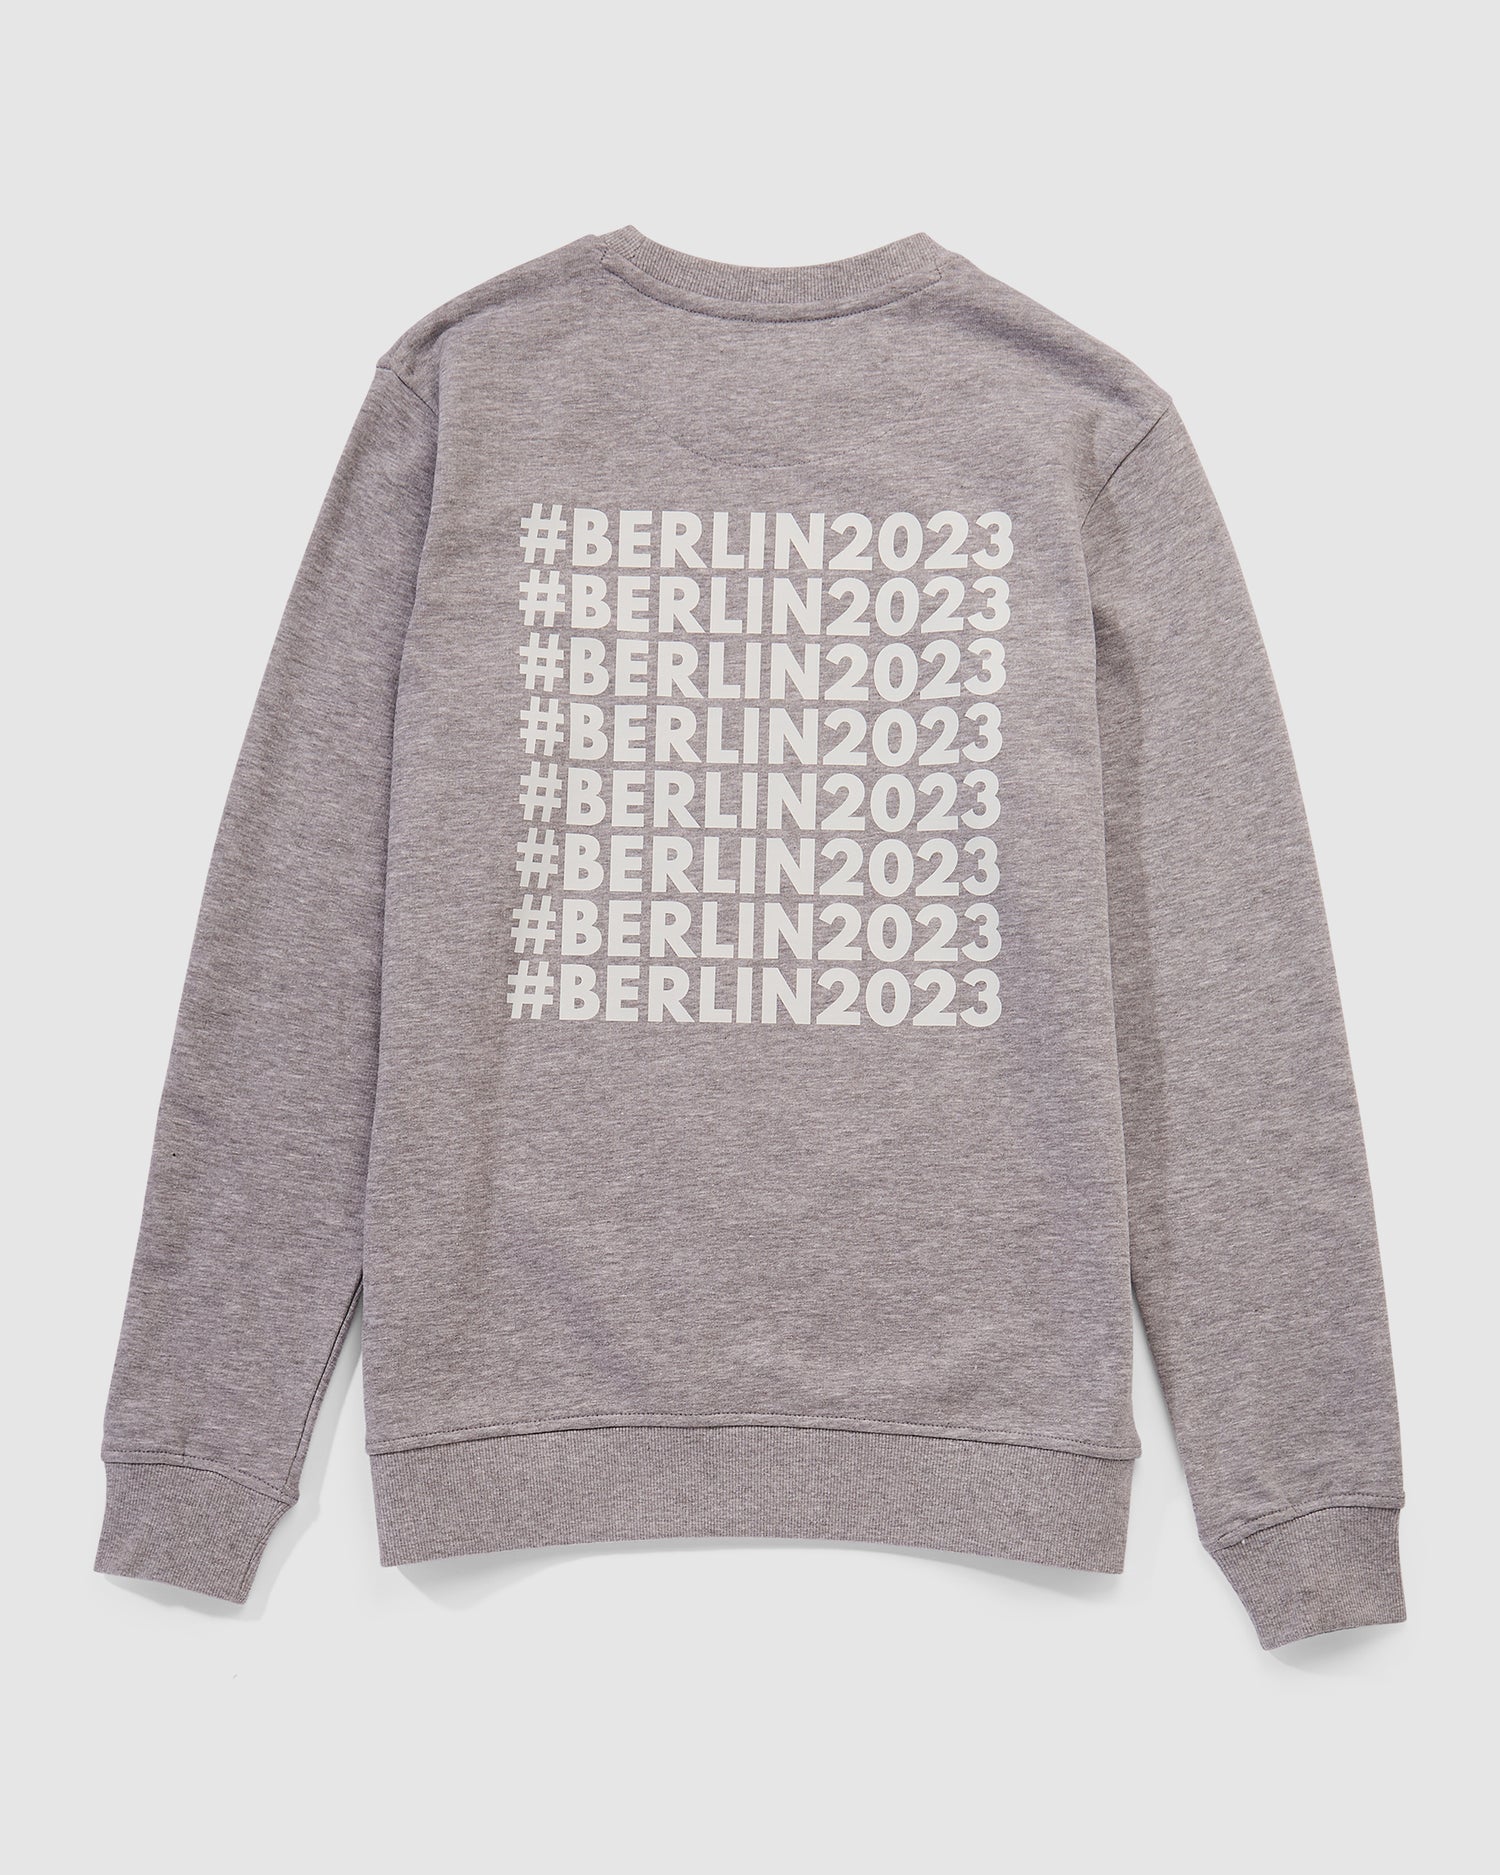 Nahaufnahme der Rückseite des Sweatshirts in grau mit #BERLIN2023 Print